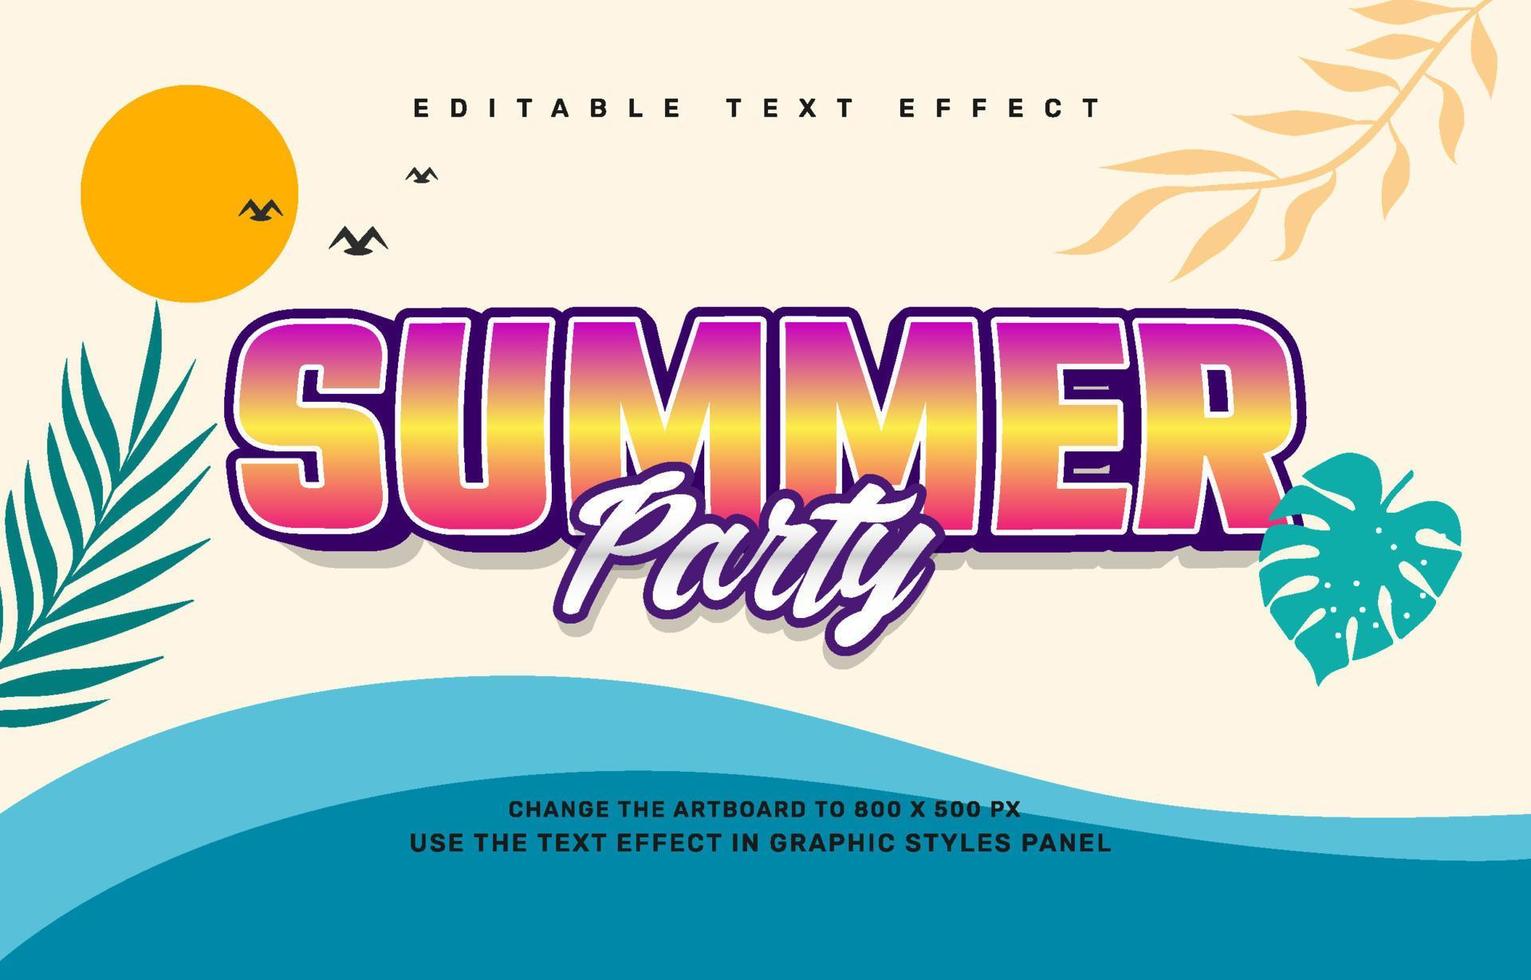 plantilla de efecto de texto editable de fiesta de verano vector